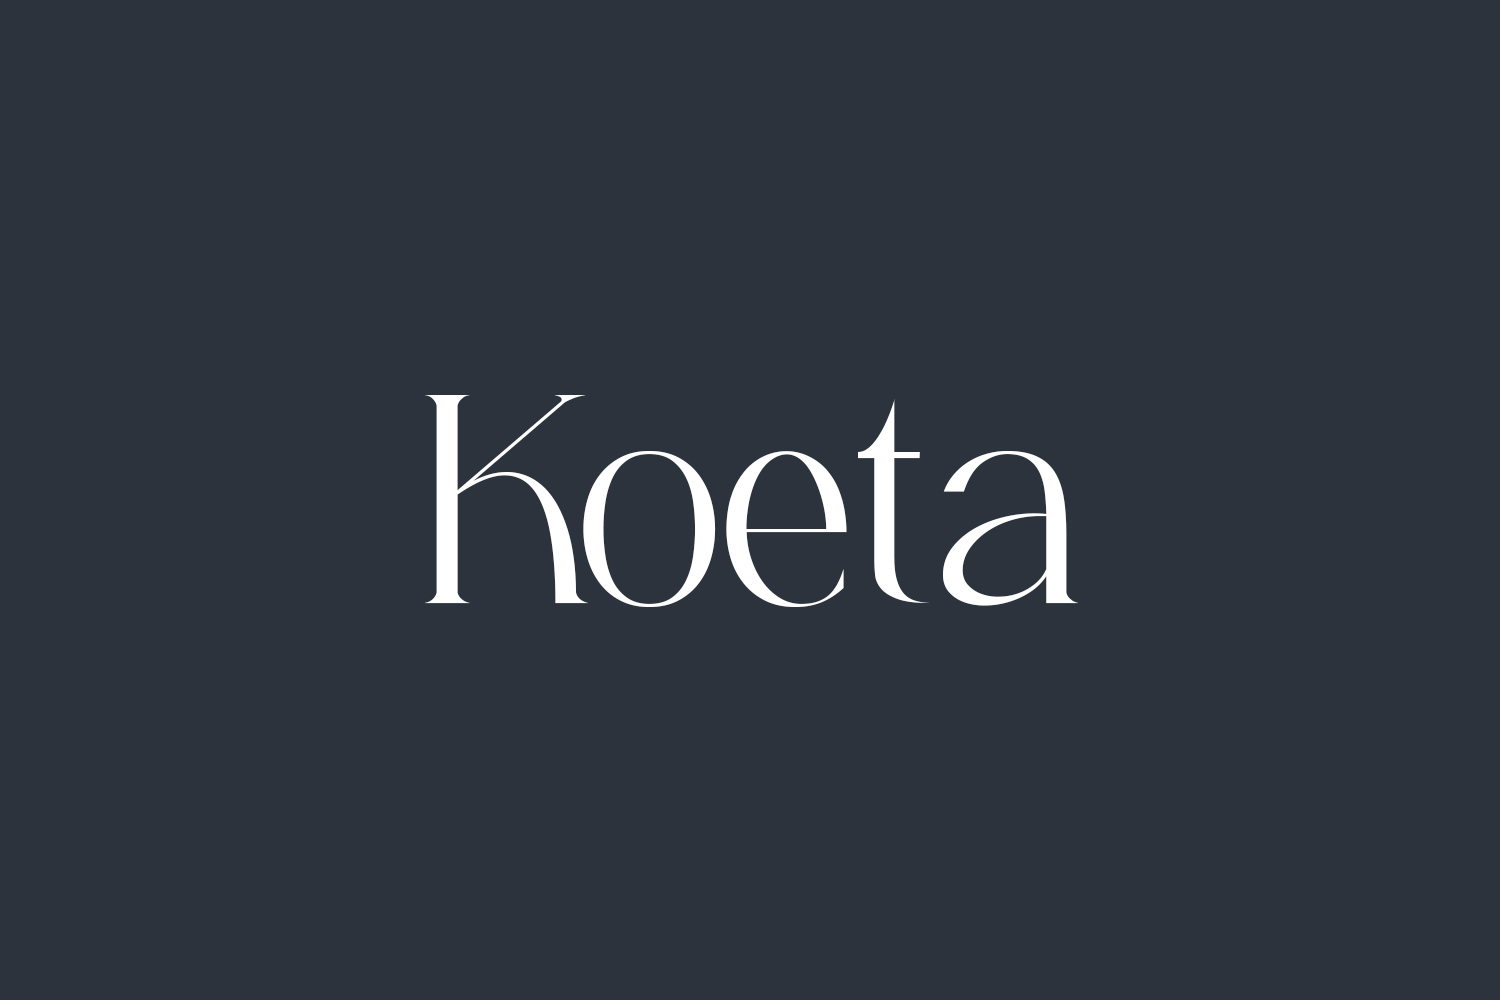 Koeta Free Font